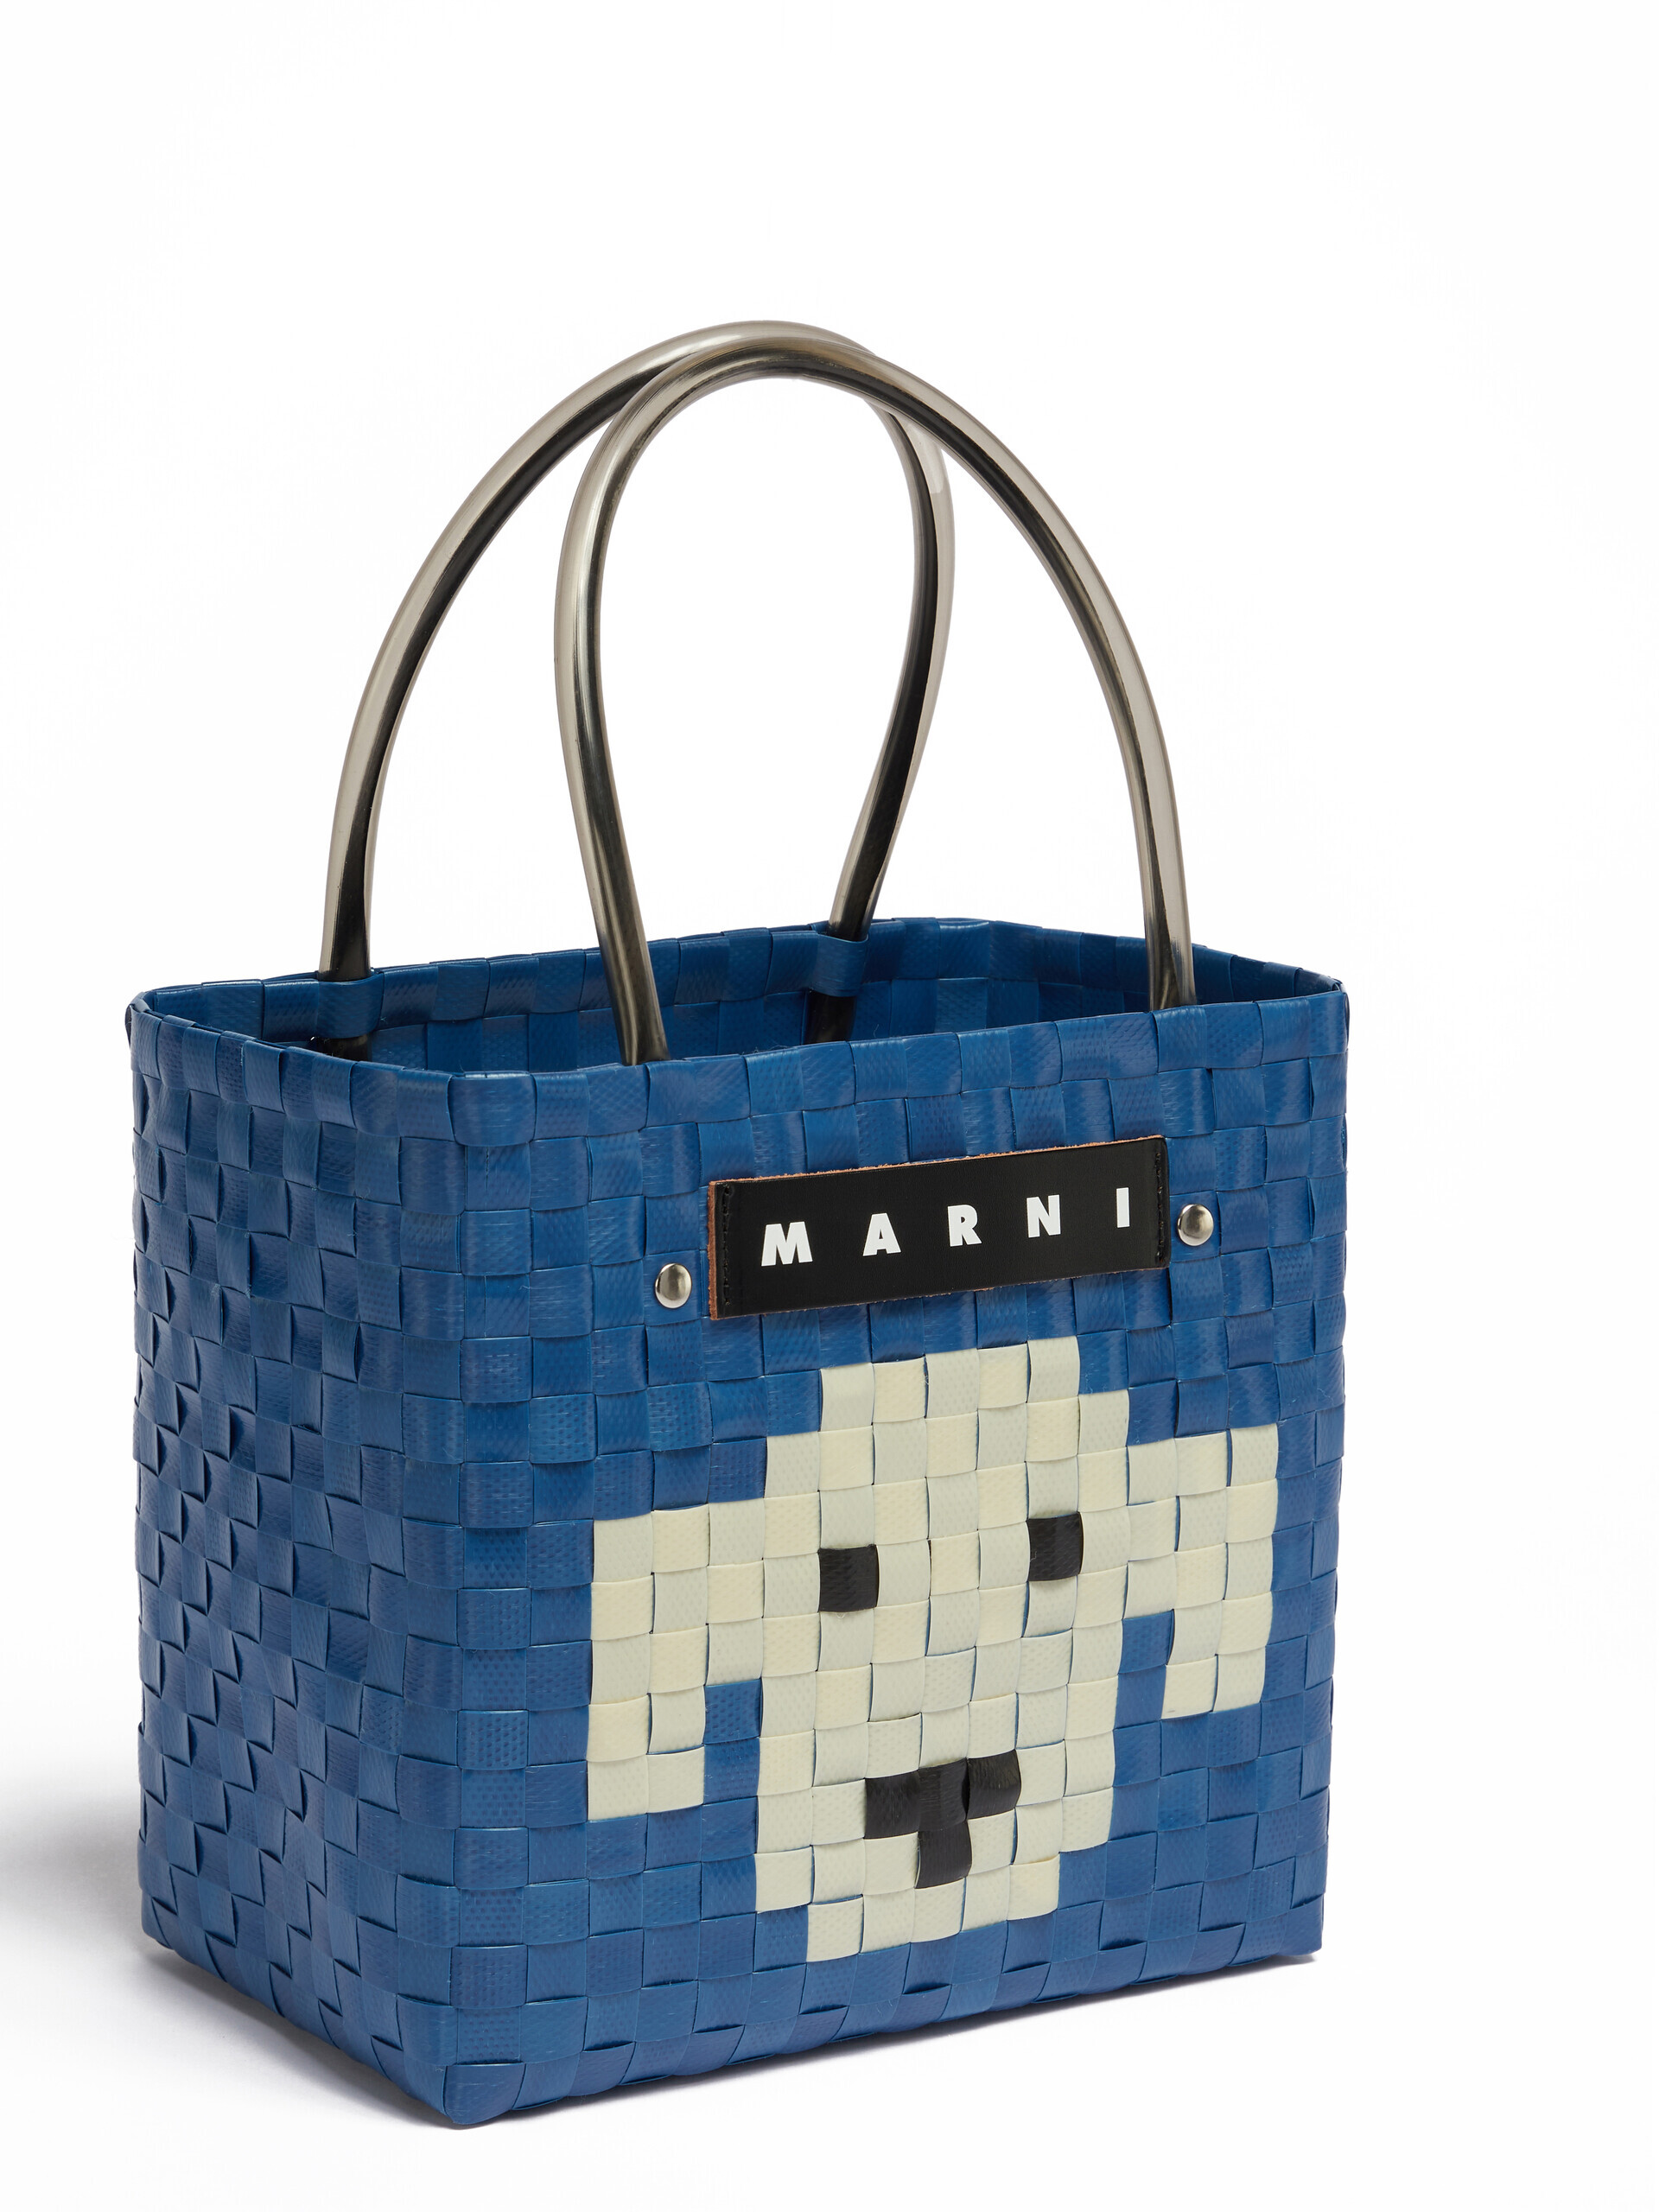 Light pink MARNI MARKET ANIMAL BASKET bag - Shopping Bags - Image 4